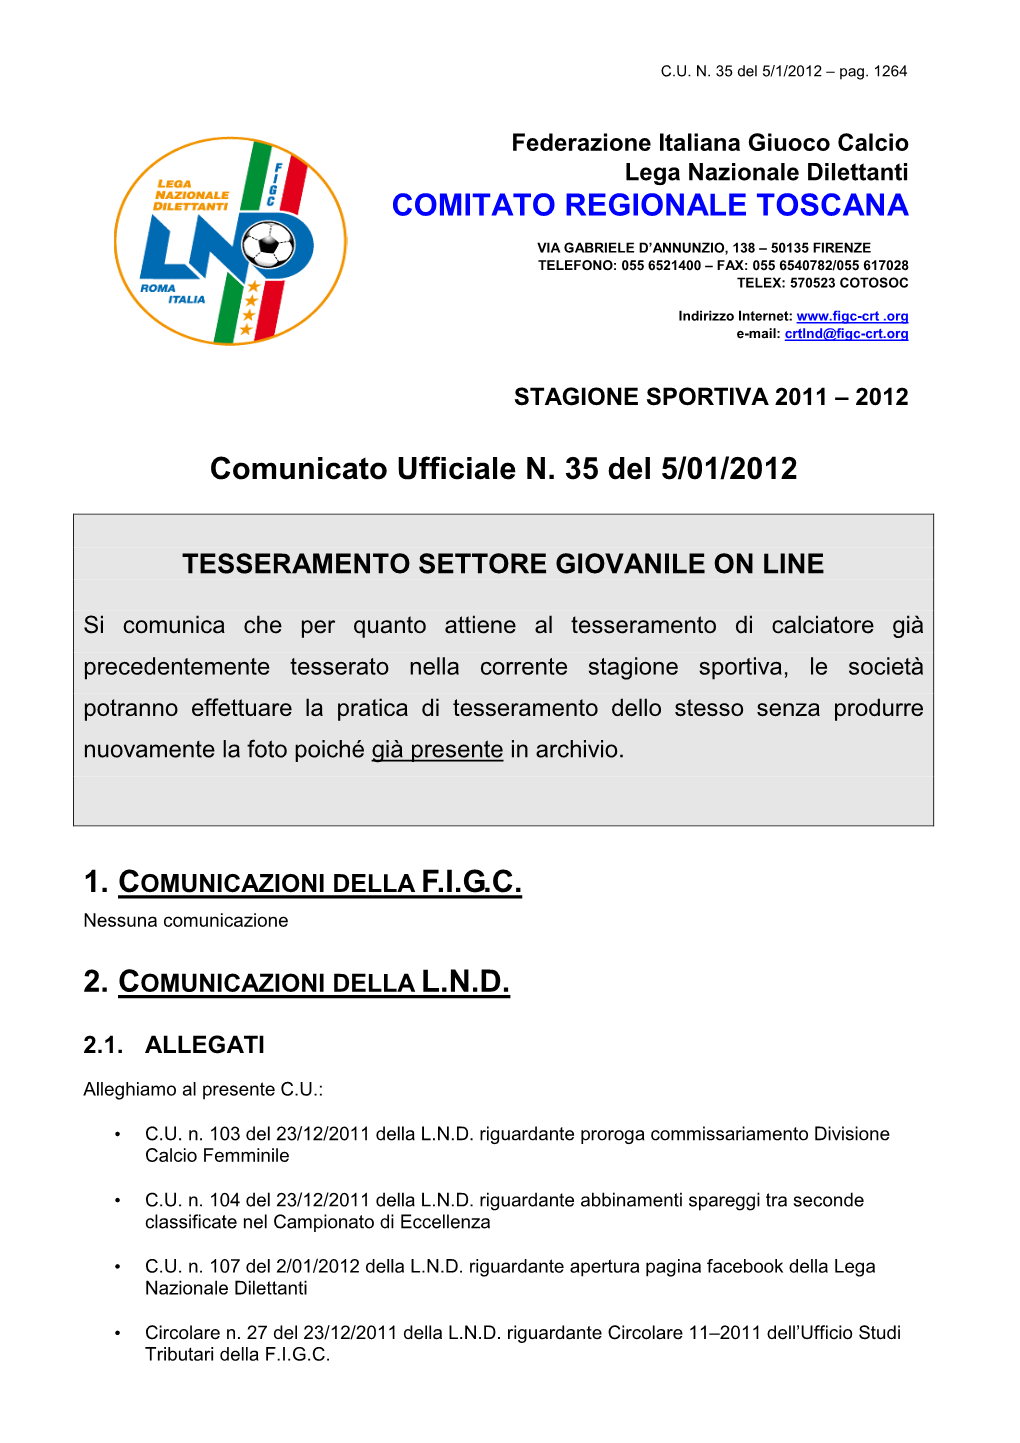 Comunicato Ufficiale N. 35 Del 5/01/2012 COMITATO REGIONALE